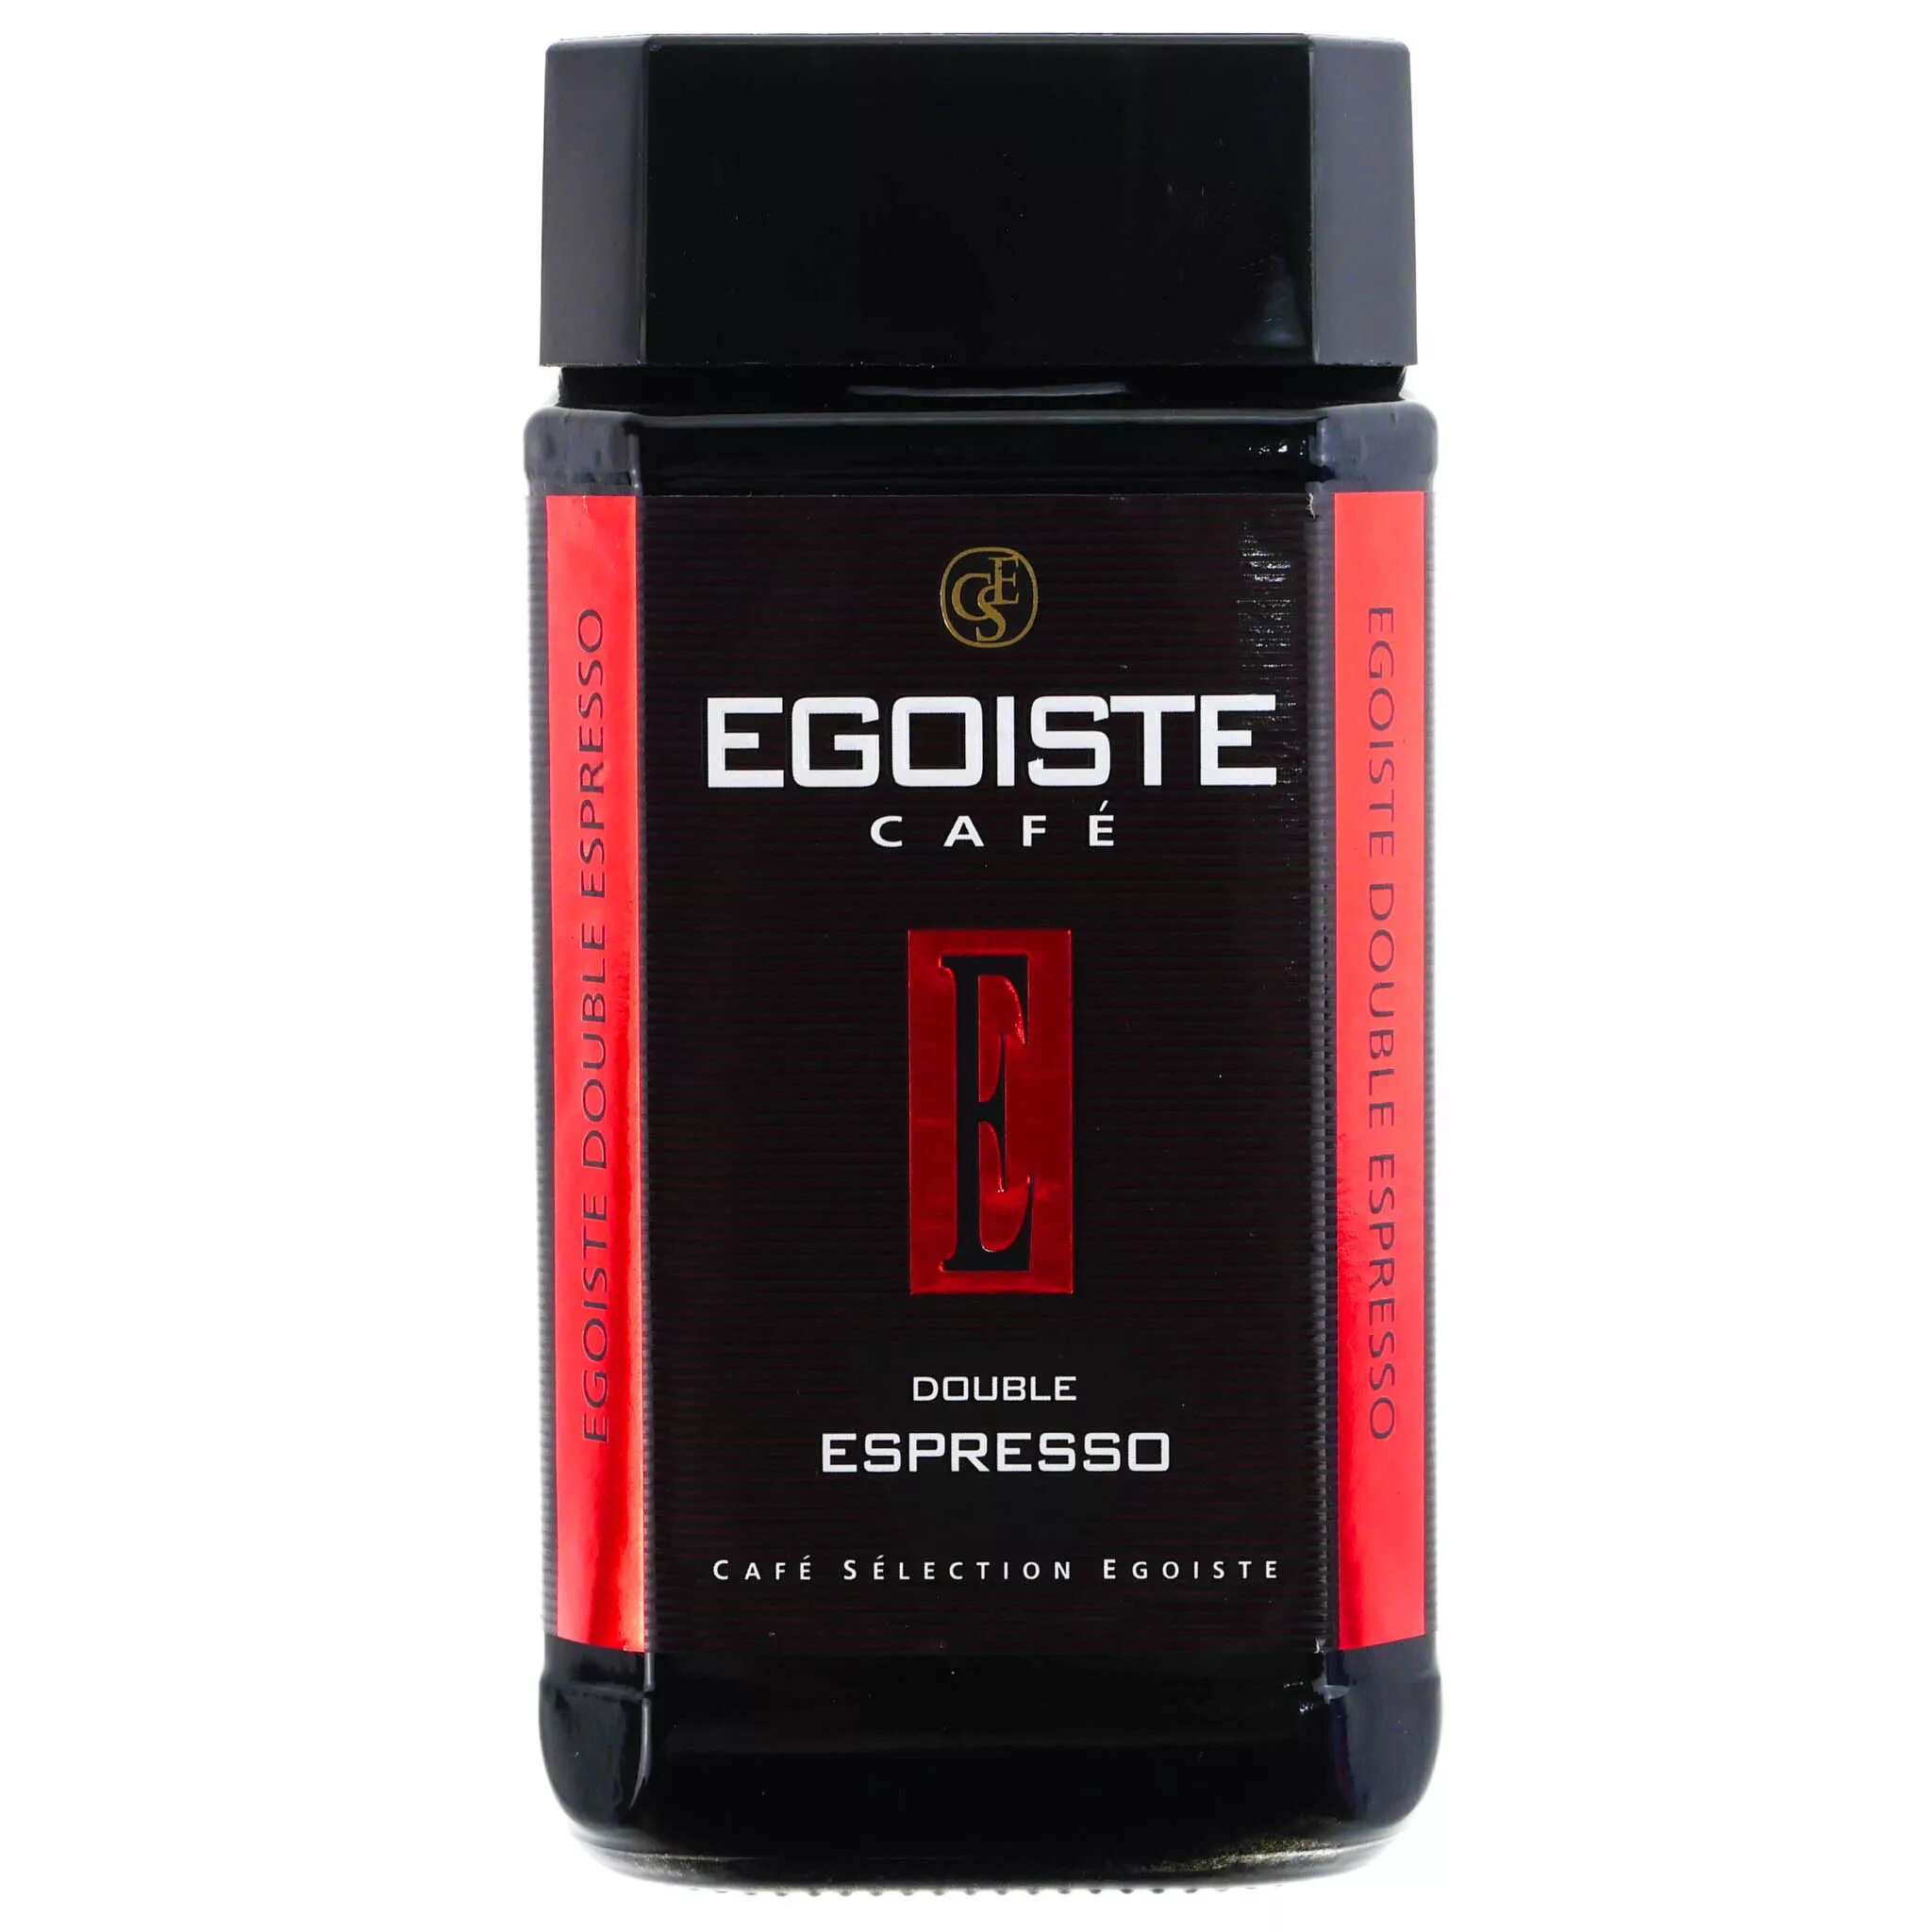 Egoiste Double Espresso 100г. Egoiste Double Espresso кофе растворимый 100г. Кофе эгоист Дабл эспрессо растворимый стеклянная банка 100 г. Egoist Espresso 250. Кофе эгоист купить москва